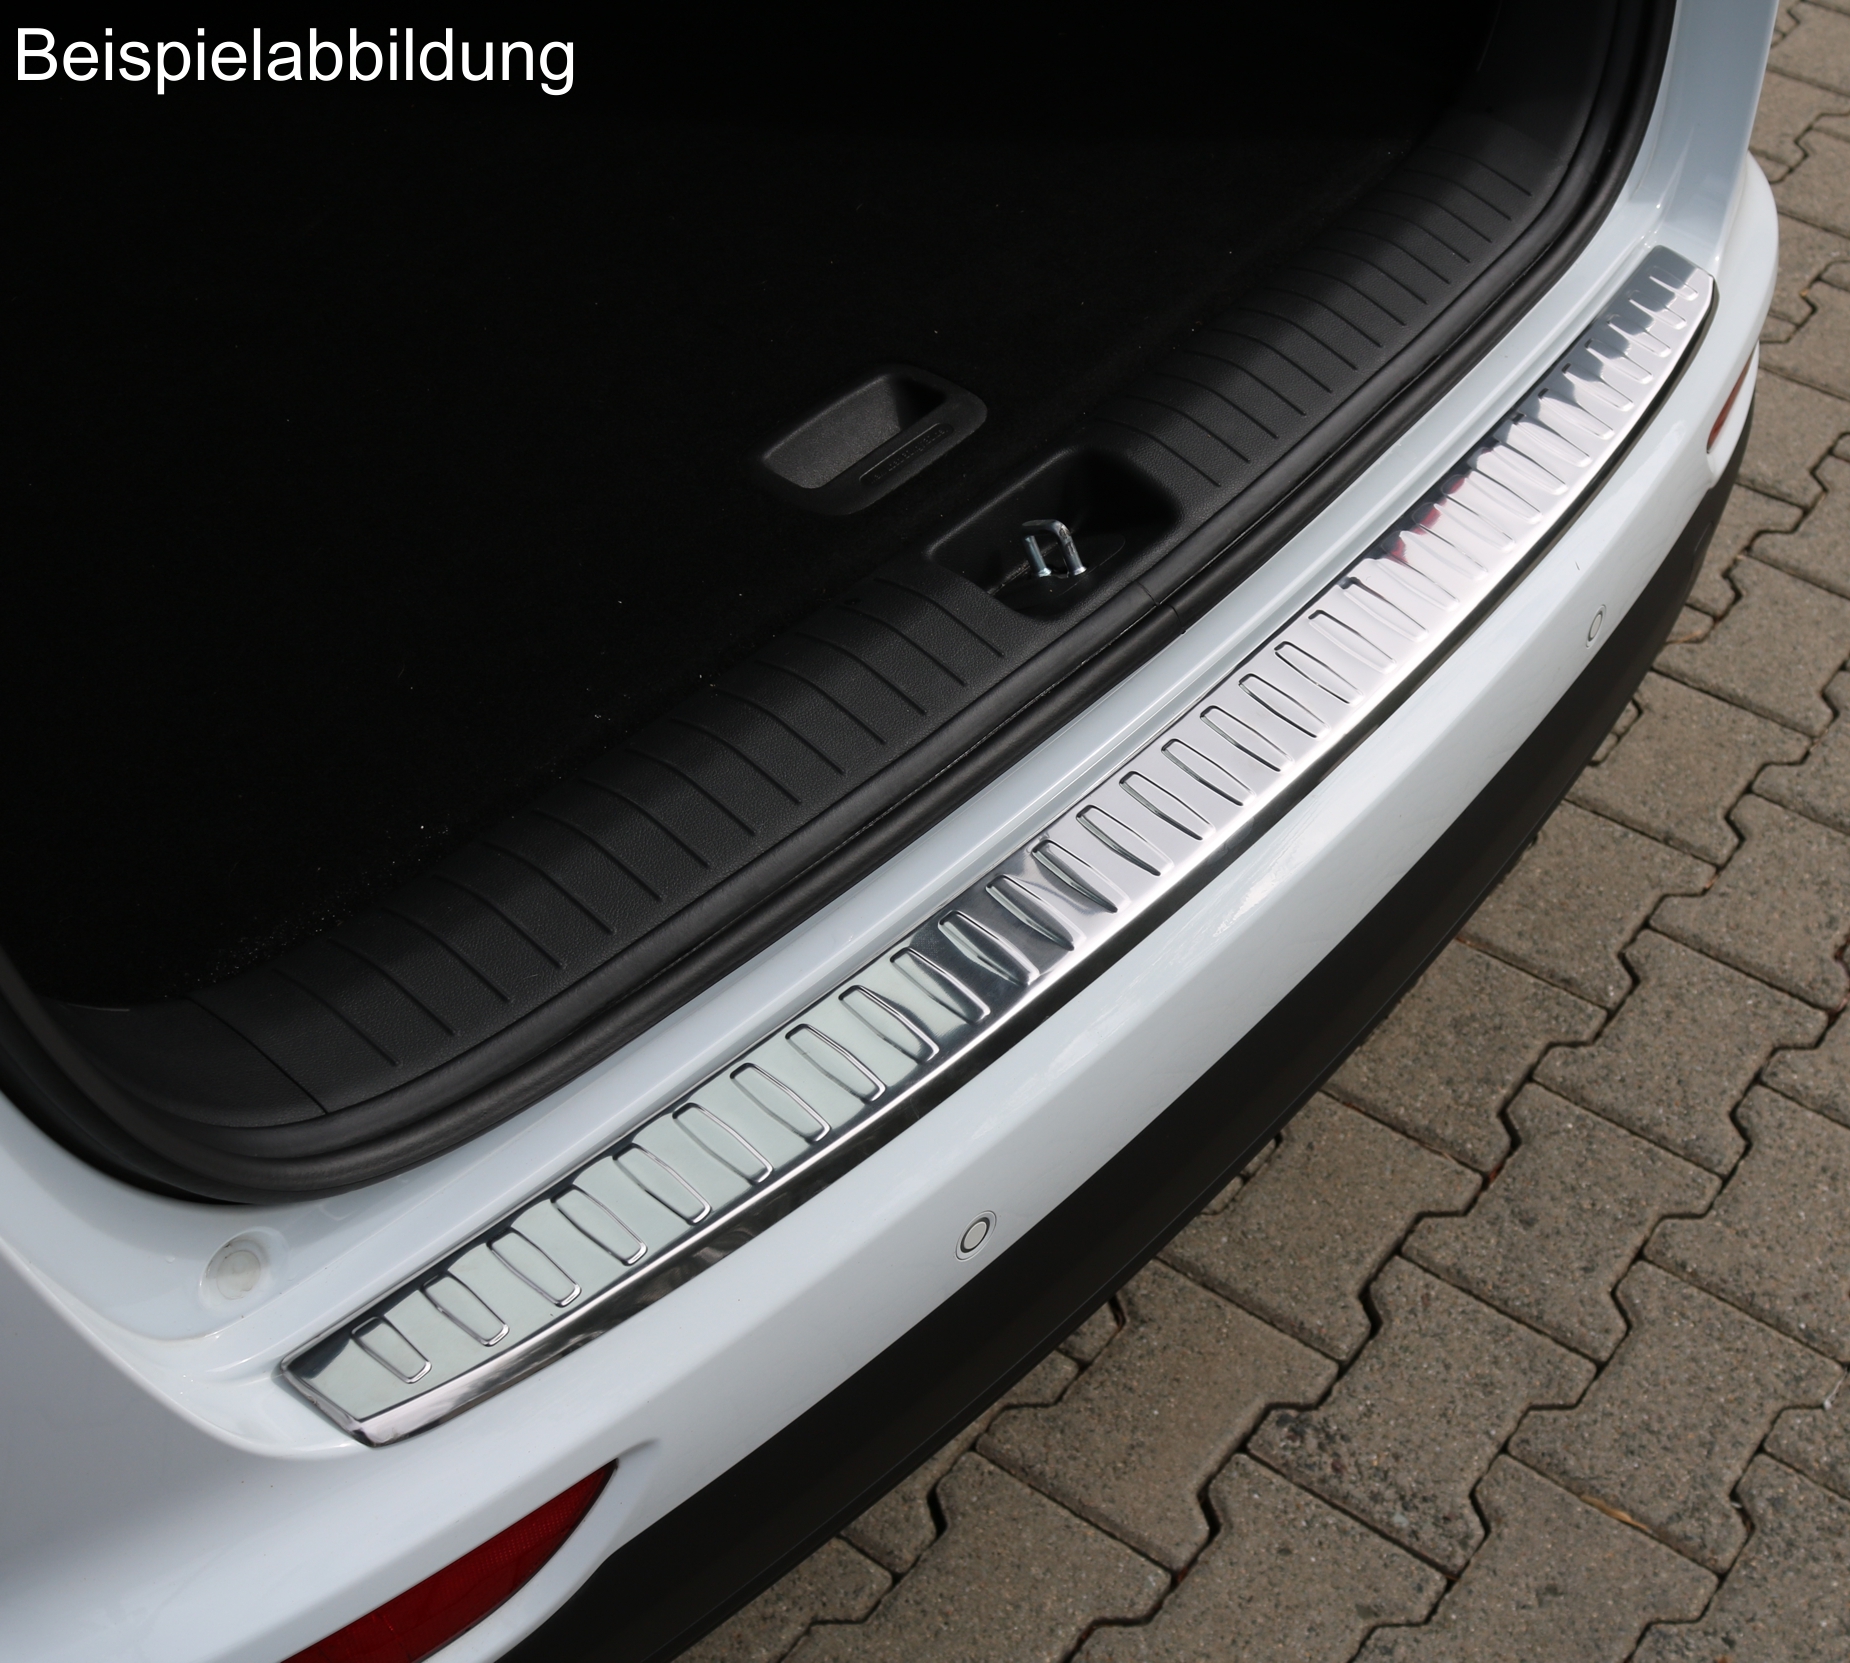 Ladekantenschutz in Chrom für Audi A3 8P/8PA | AD-Tuning